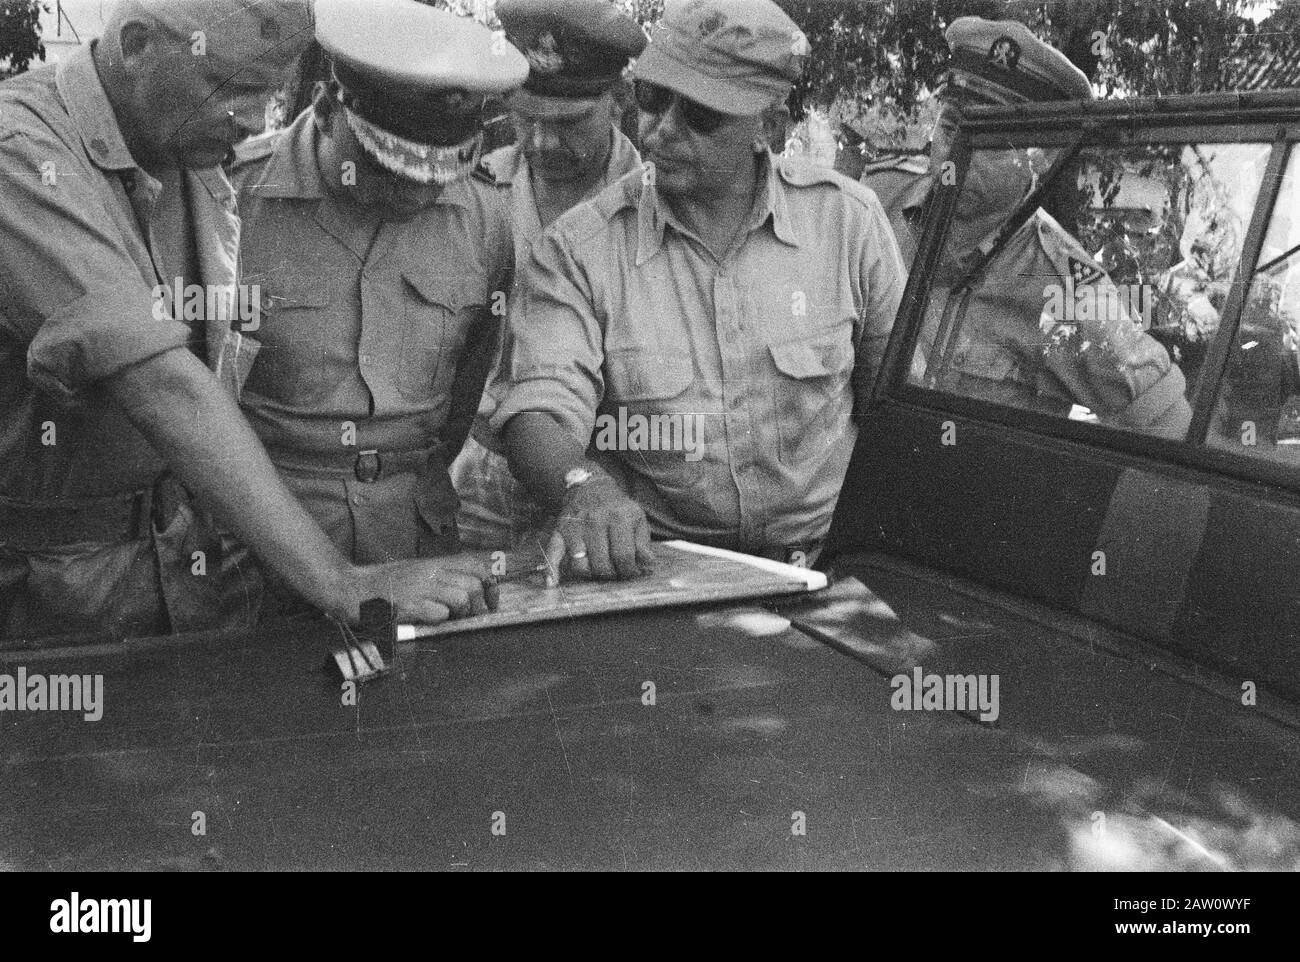 Visitez le commandant de l'armée S. H. Trace le long des officiers de Bali, de Surabaya et du Timor regarder la carte, au milieu S. H. Track Date: 12 juin 1946 lieu: Indonésie Hollandais East Indies Banque D'Images